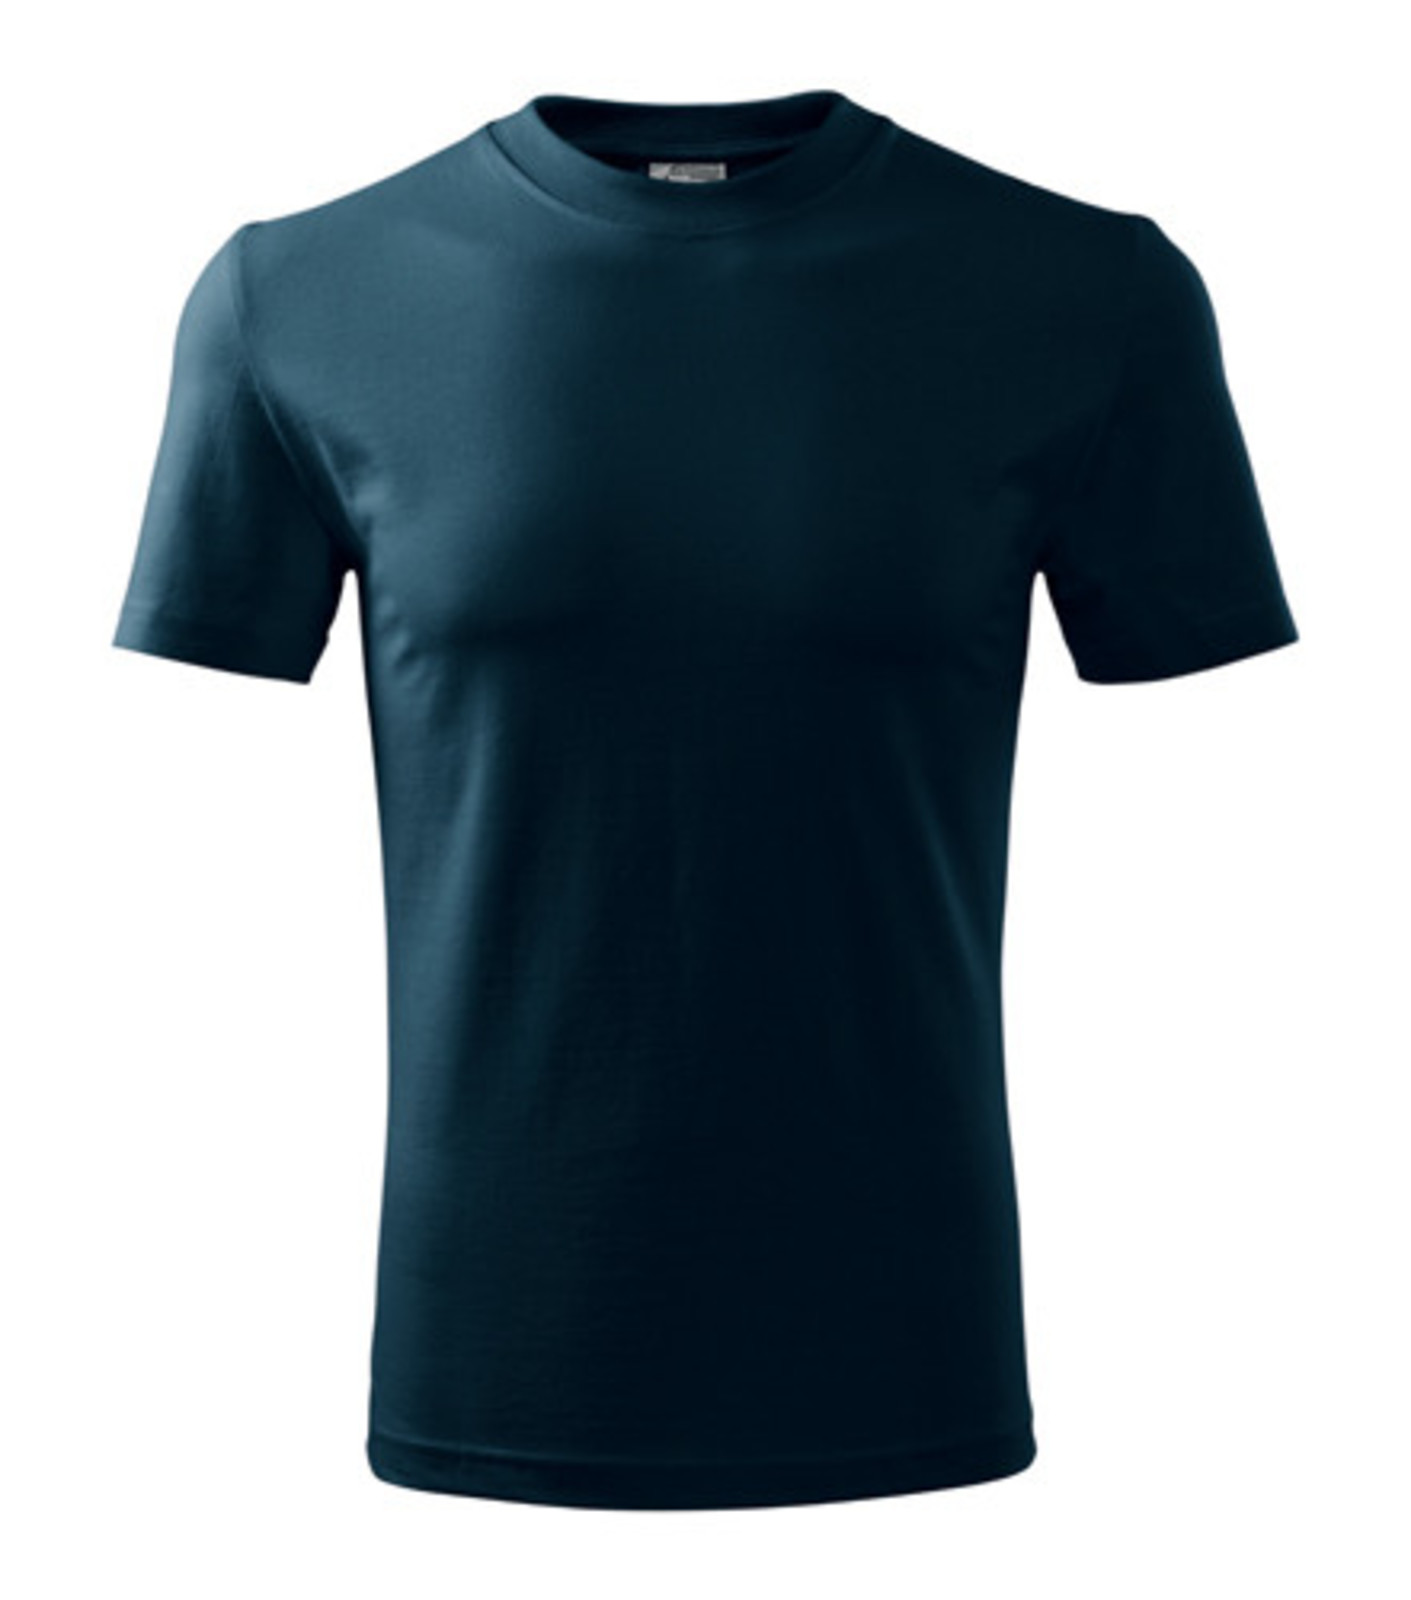 Pánske tričko Adler Classic 101 - veľkosť: L, farba: tmavo modrá